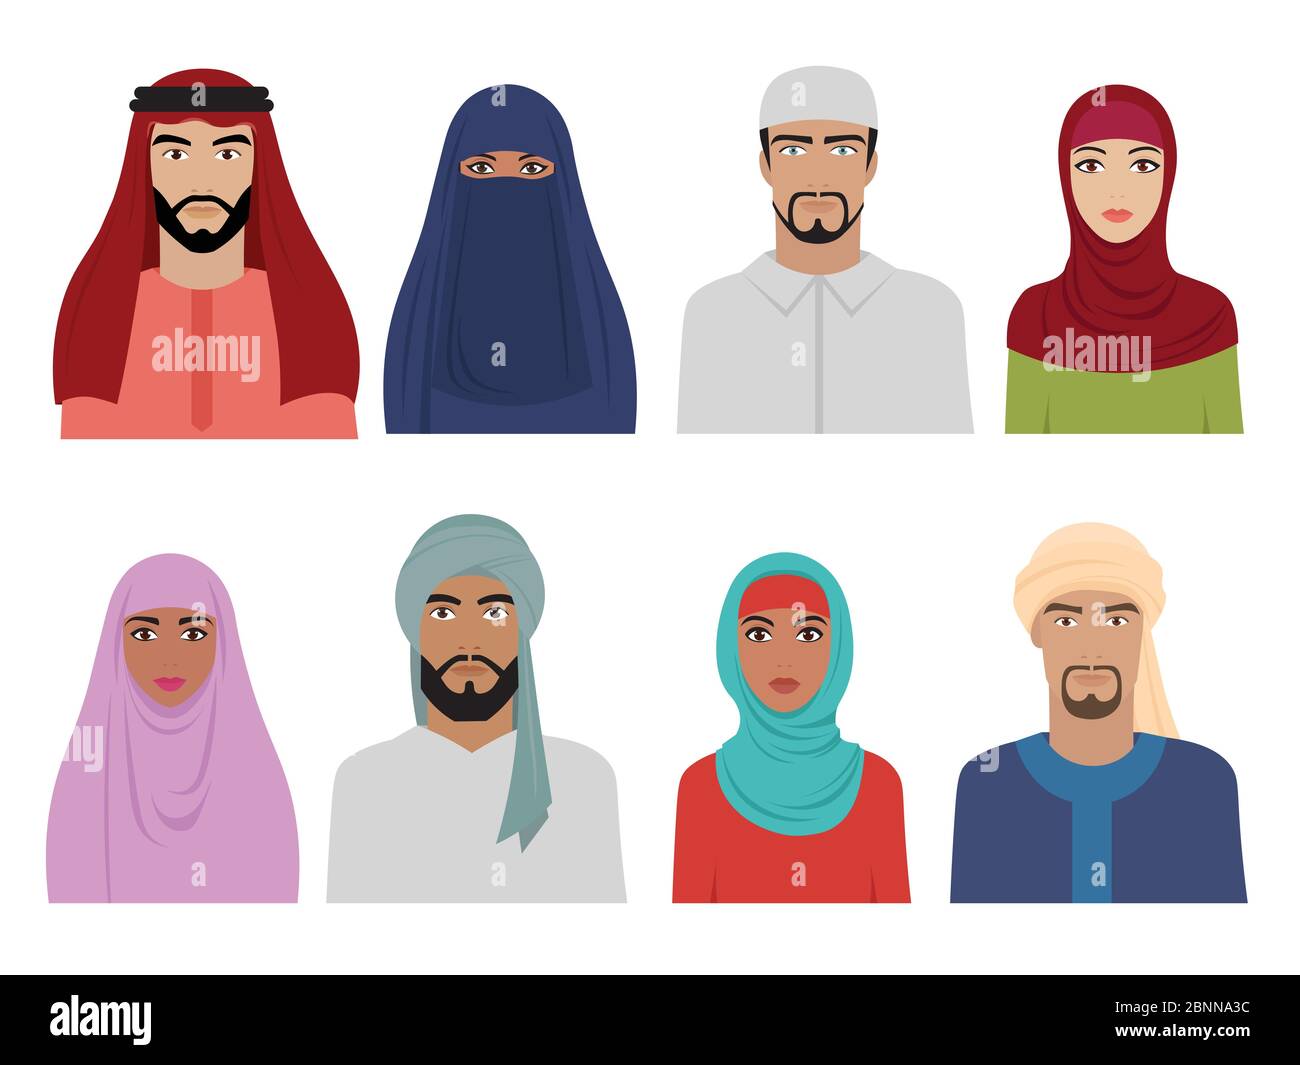 Arabische Nationalkleidung. Islamische iranische türkische und arabische Mode für Männer und Frauen Kopftuch Hijab und Kleider Vektor-Illustrationen Stock Vektor